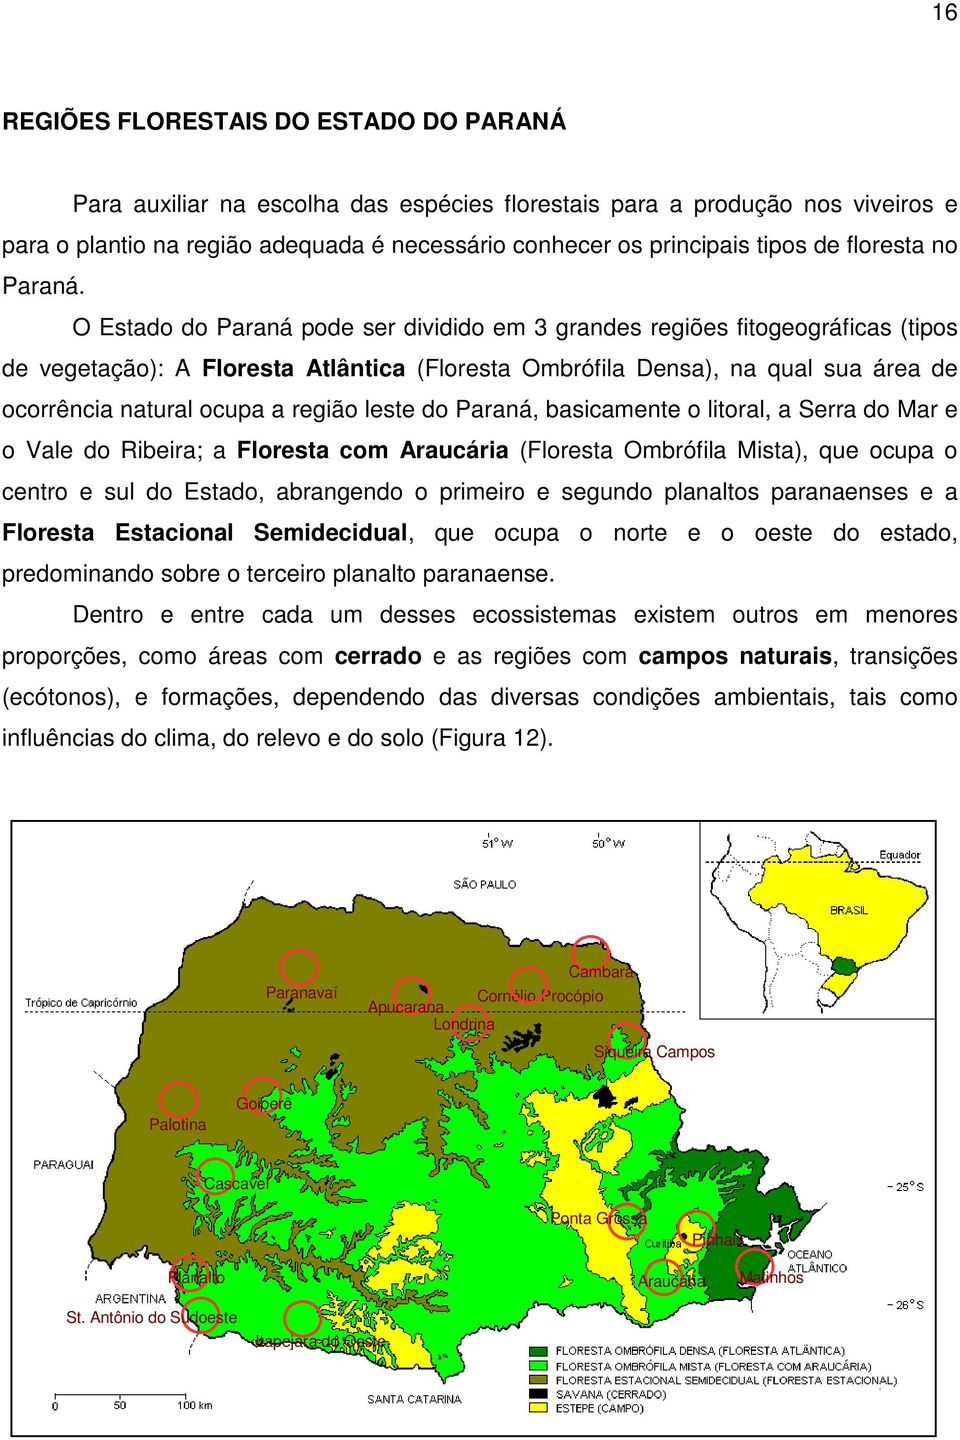 O Estado do Paraná pode ser dividido em 3 grandes regiões fitogeográficas (tipos de vegetação): A Floresta Atlântica (Floresta Ombrófila Densa), na qual sua área de ocorrência natural ocupa a região